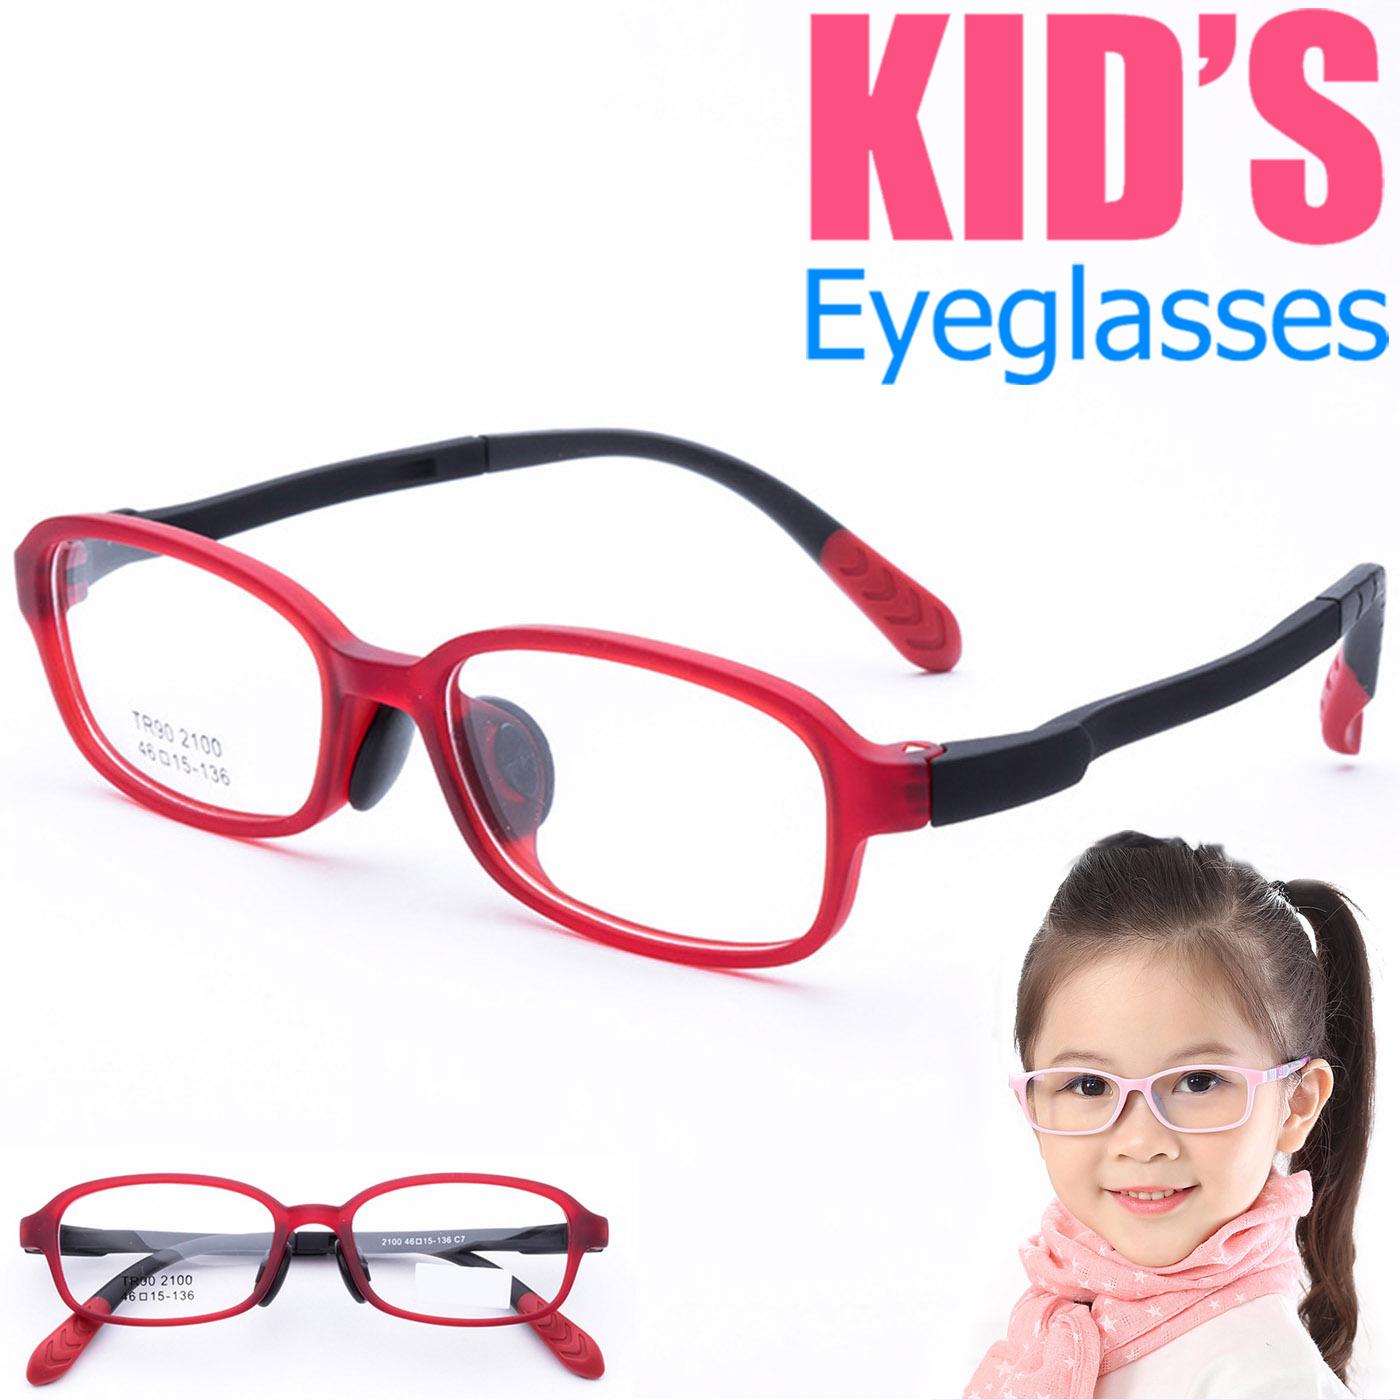 แว่นตาเกาหลีเด็ก Fashion Korea Children แว่นตาเด็ก รุ่น 2100 C-7 สีแดง กรอบแว่นตาเด็ก Square ทรงสี่เหลี่ยม Eyeglass baby frame ( สำหรับตัดเลนส์ ) วัสดุ TR-90 เบาและยืดหยุนได้สูง ขาข้อต่อ Kid eyewear Glasses